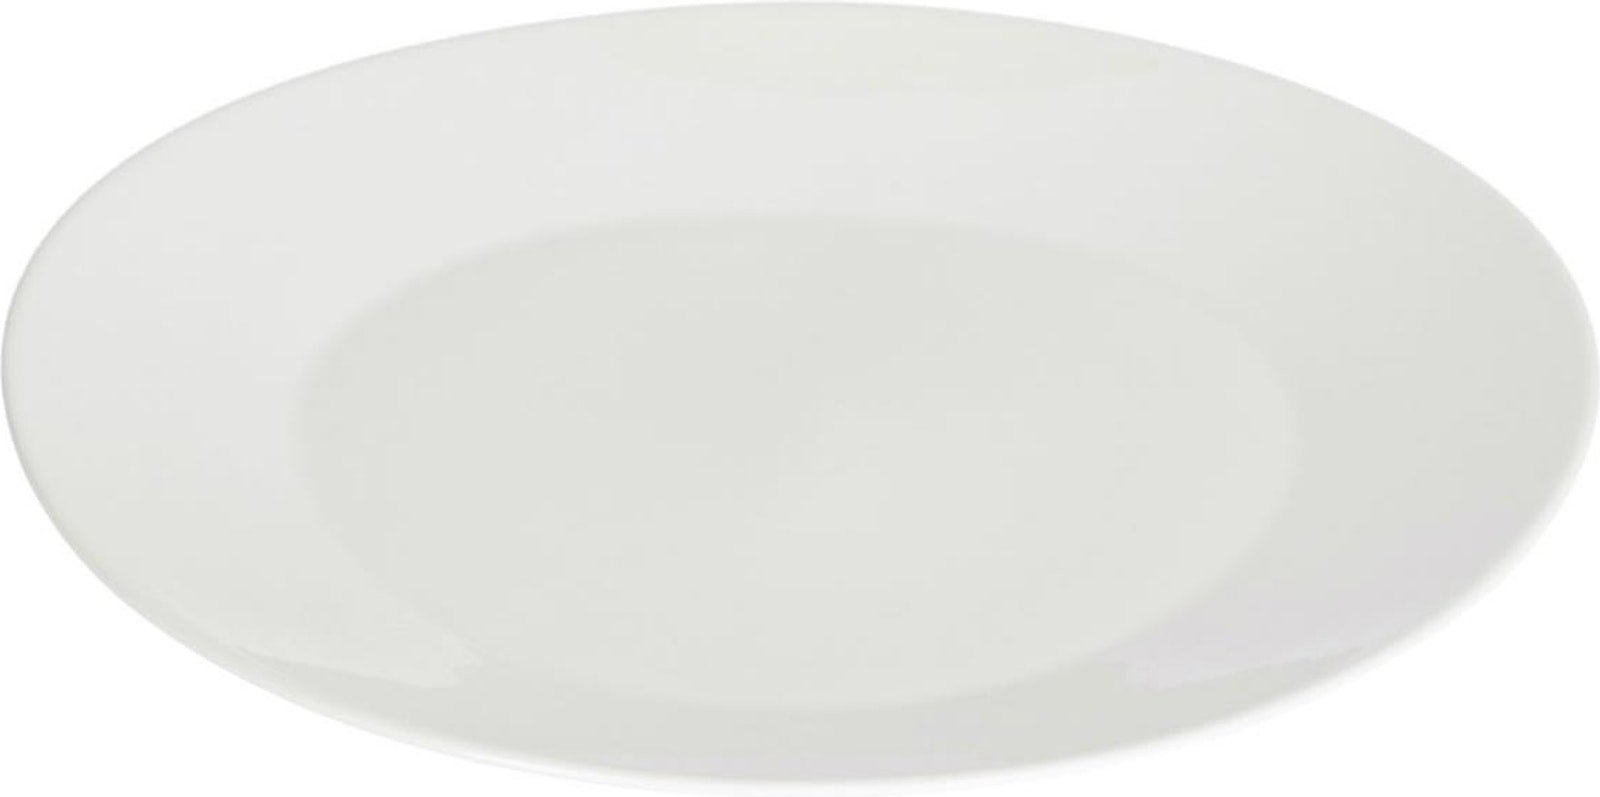 LAFORMA Pierina tallerken - hvid porcelæn (Ø26,8)